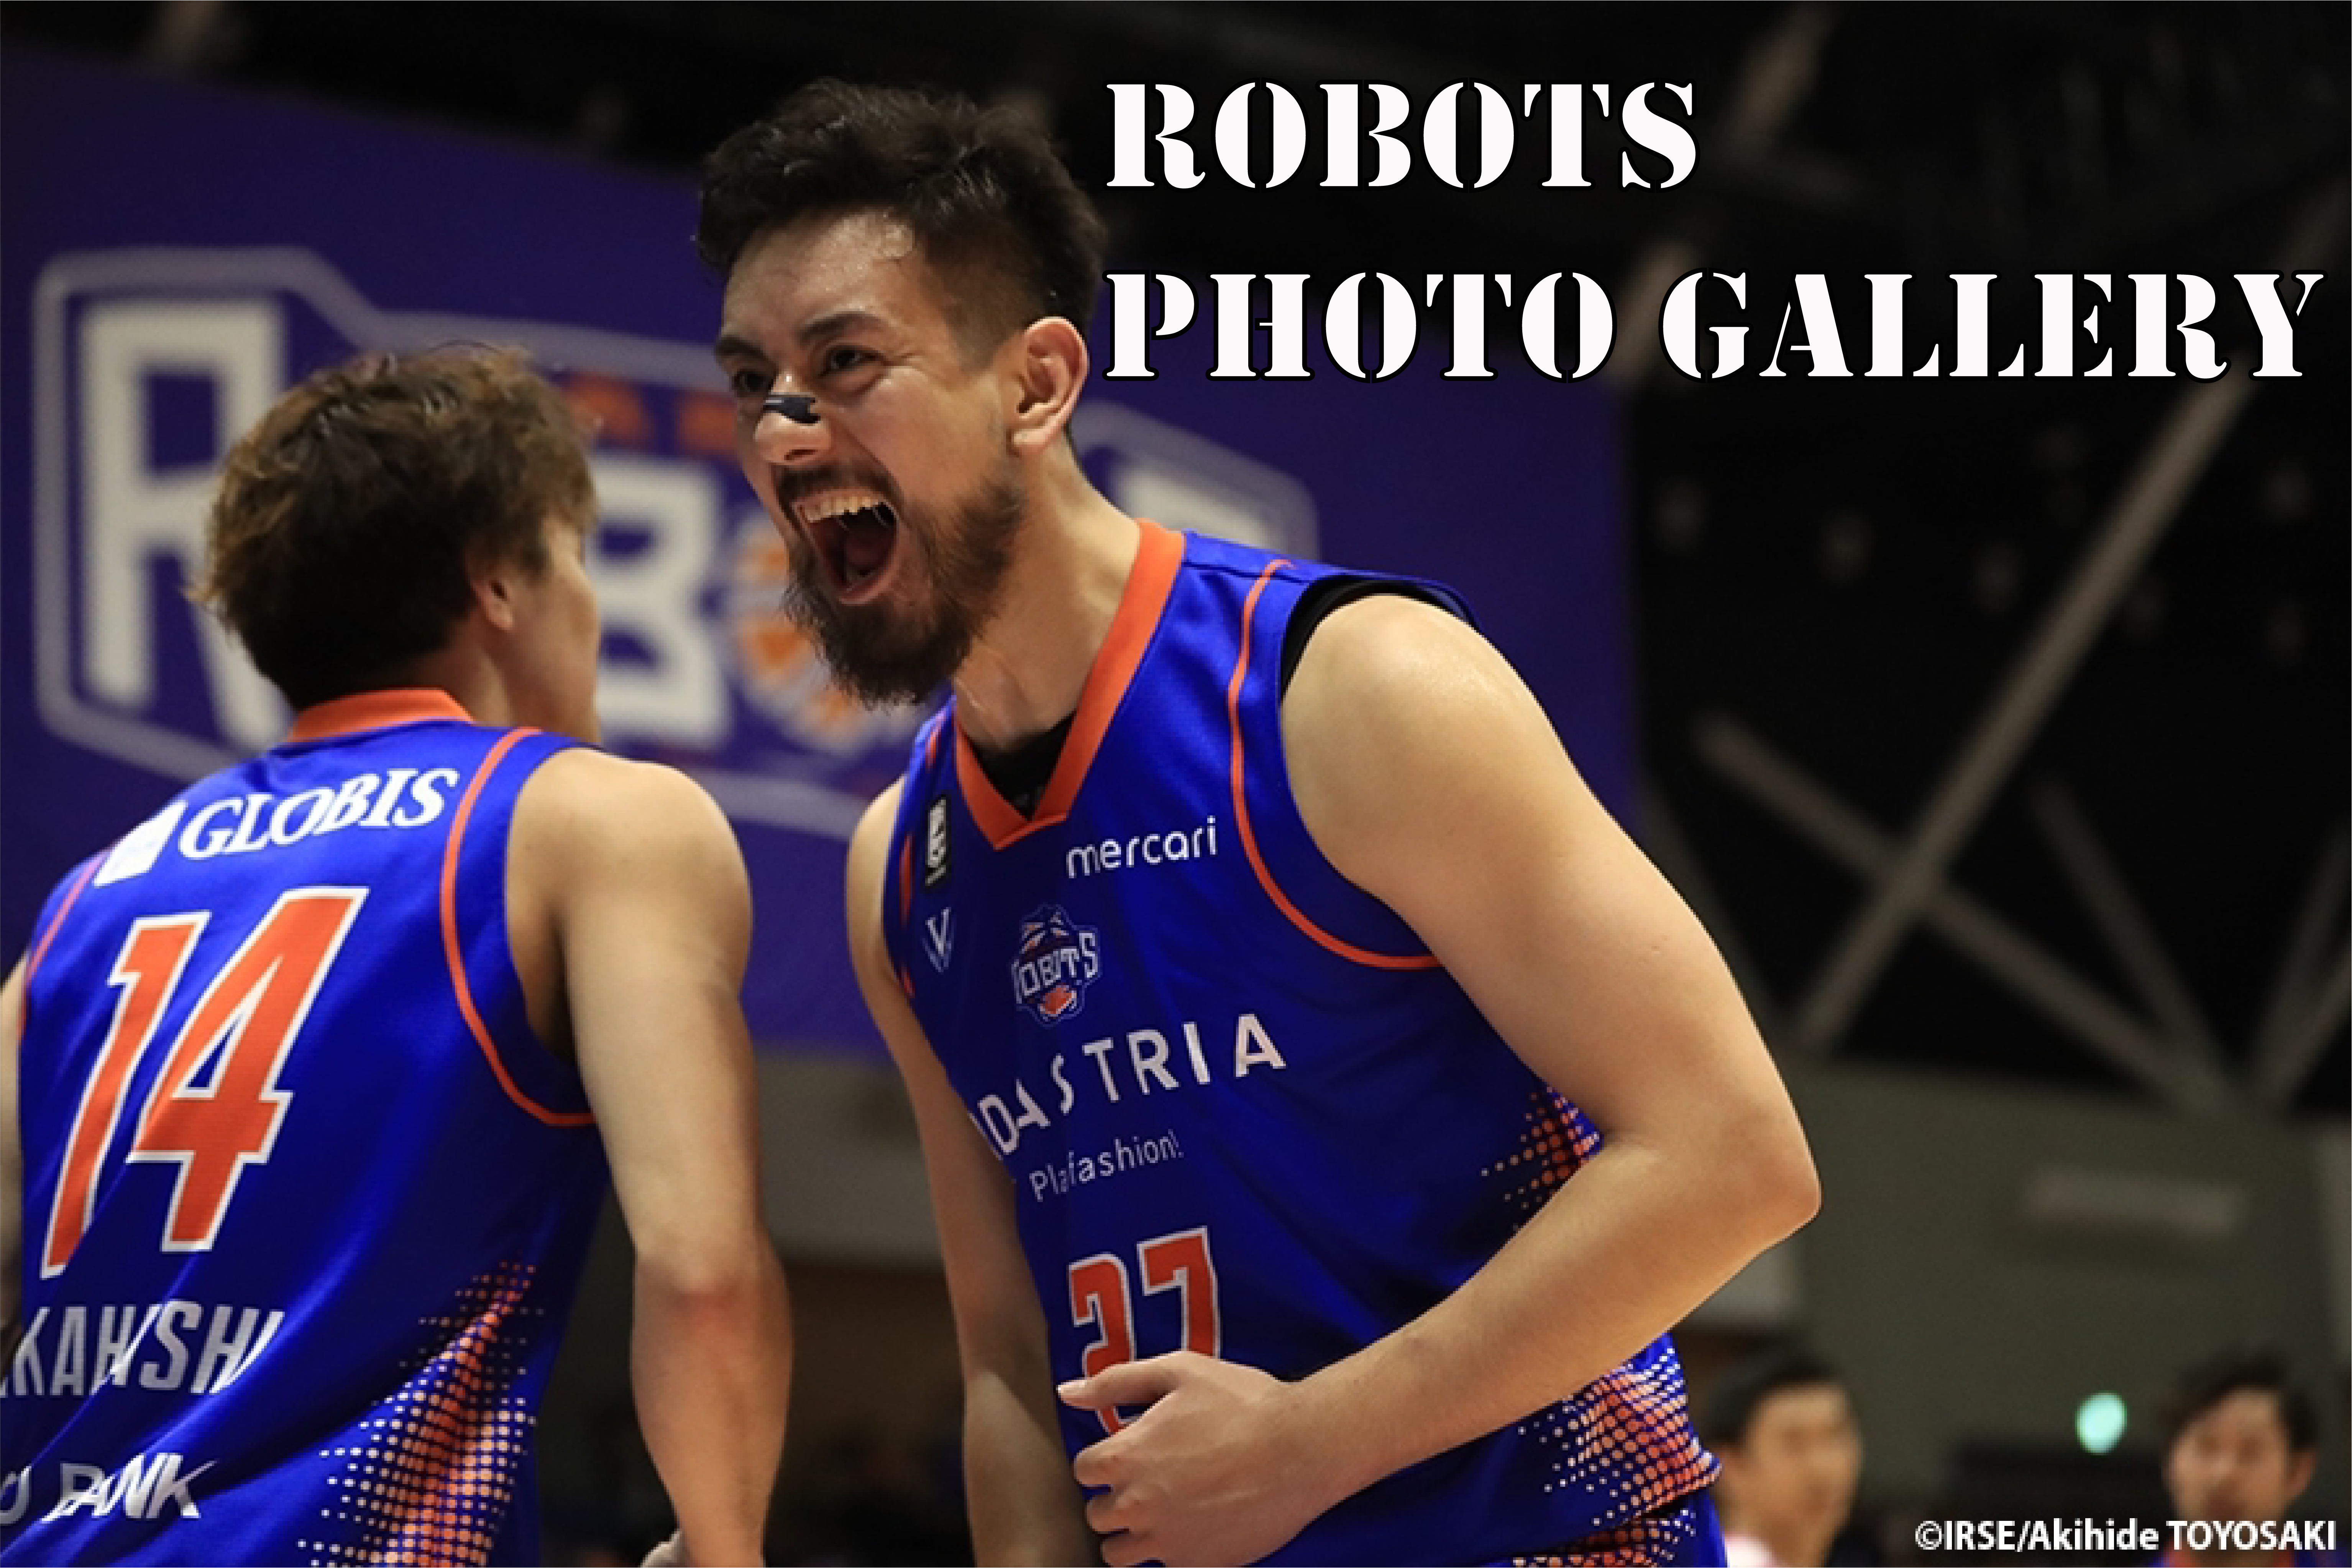 『ROBOTS PHOTO GALLERY』 2019-20シーズン 第18節 vs.福島ファイヤーボンズ